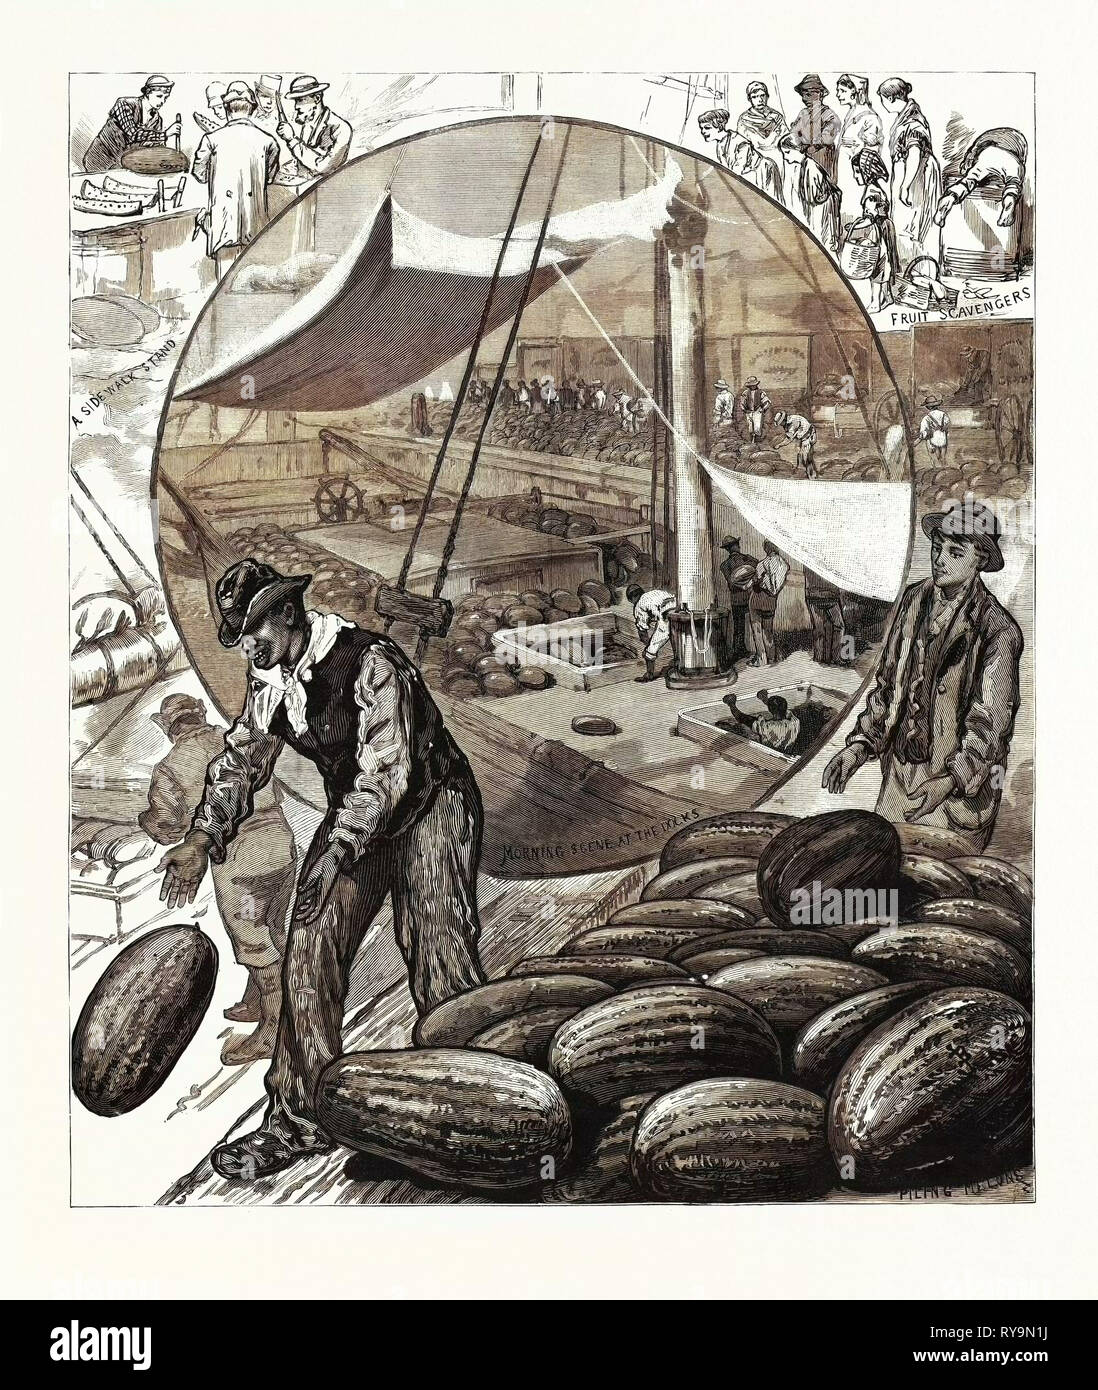 New York: incidenti del Cocomero scambi nella metropoli, U.S., incisione 1880 1881 Foto Stock